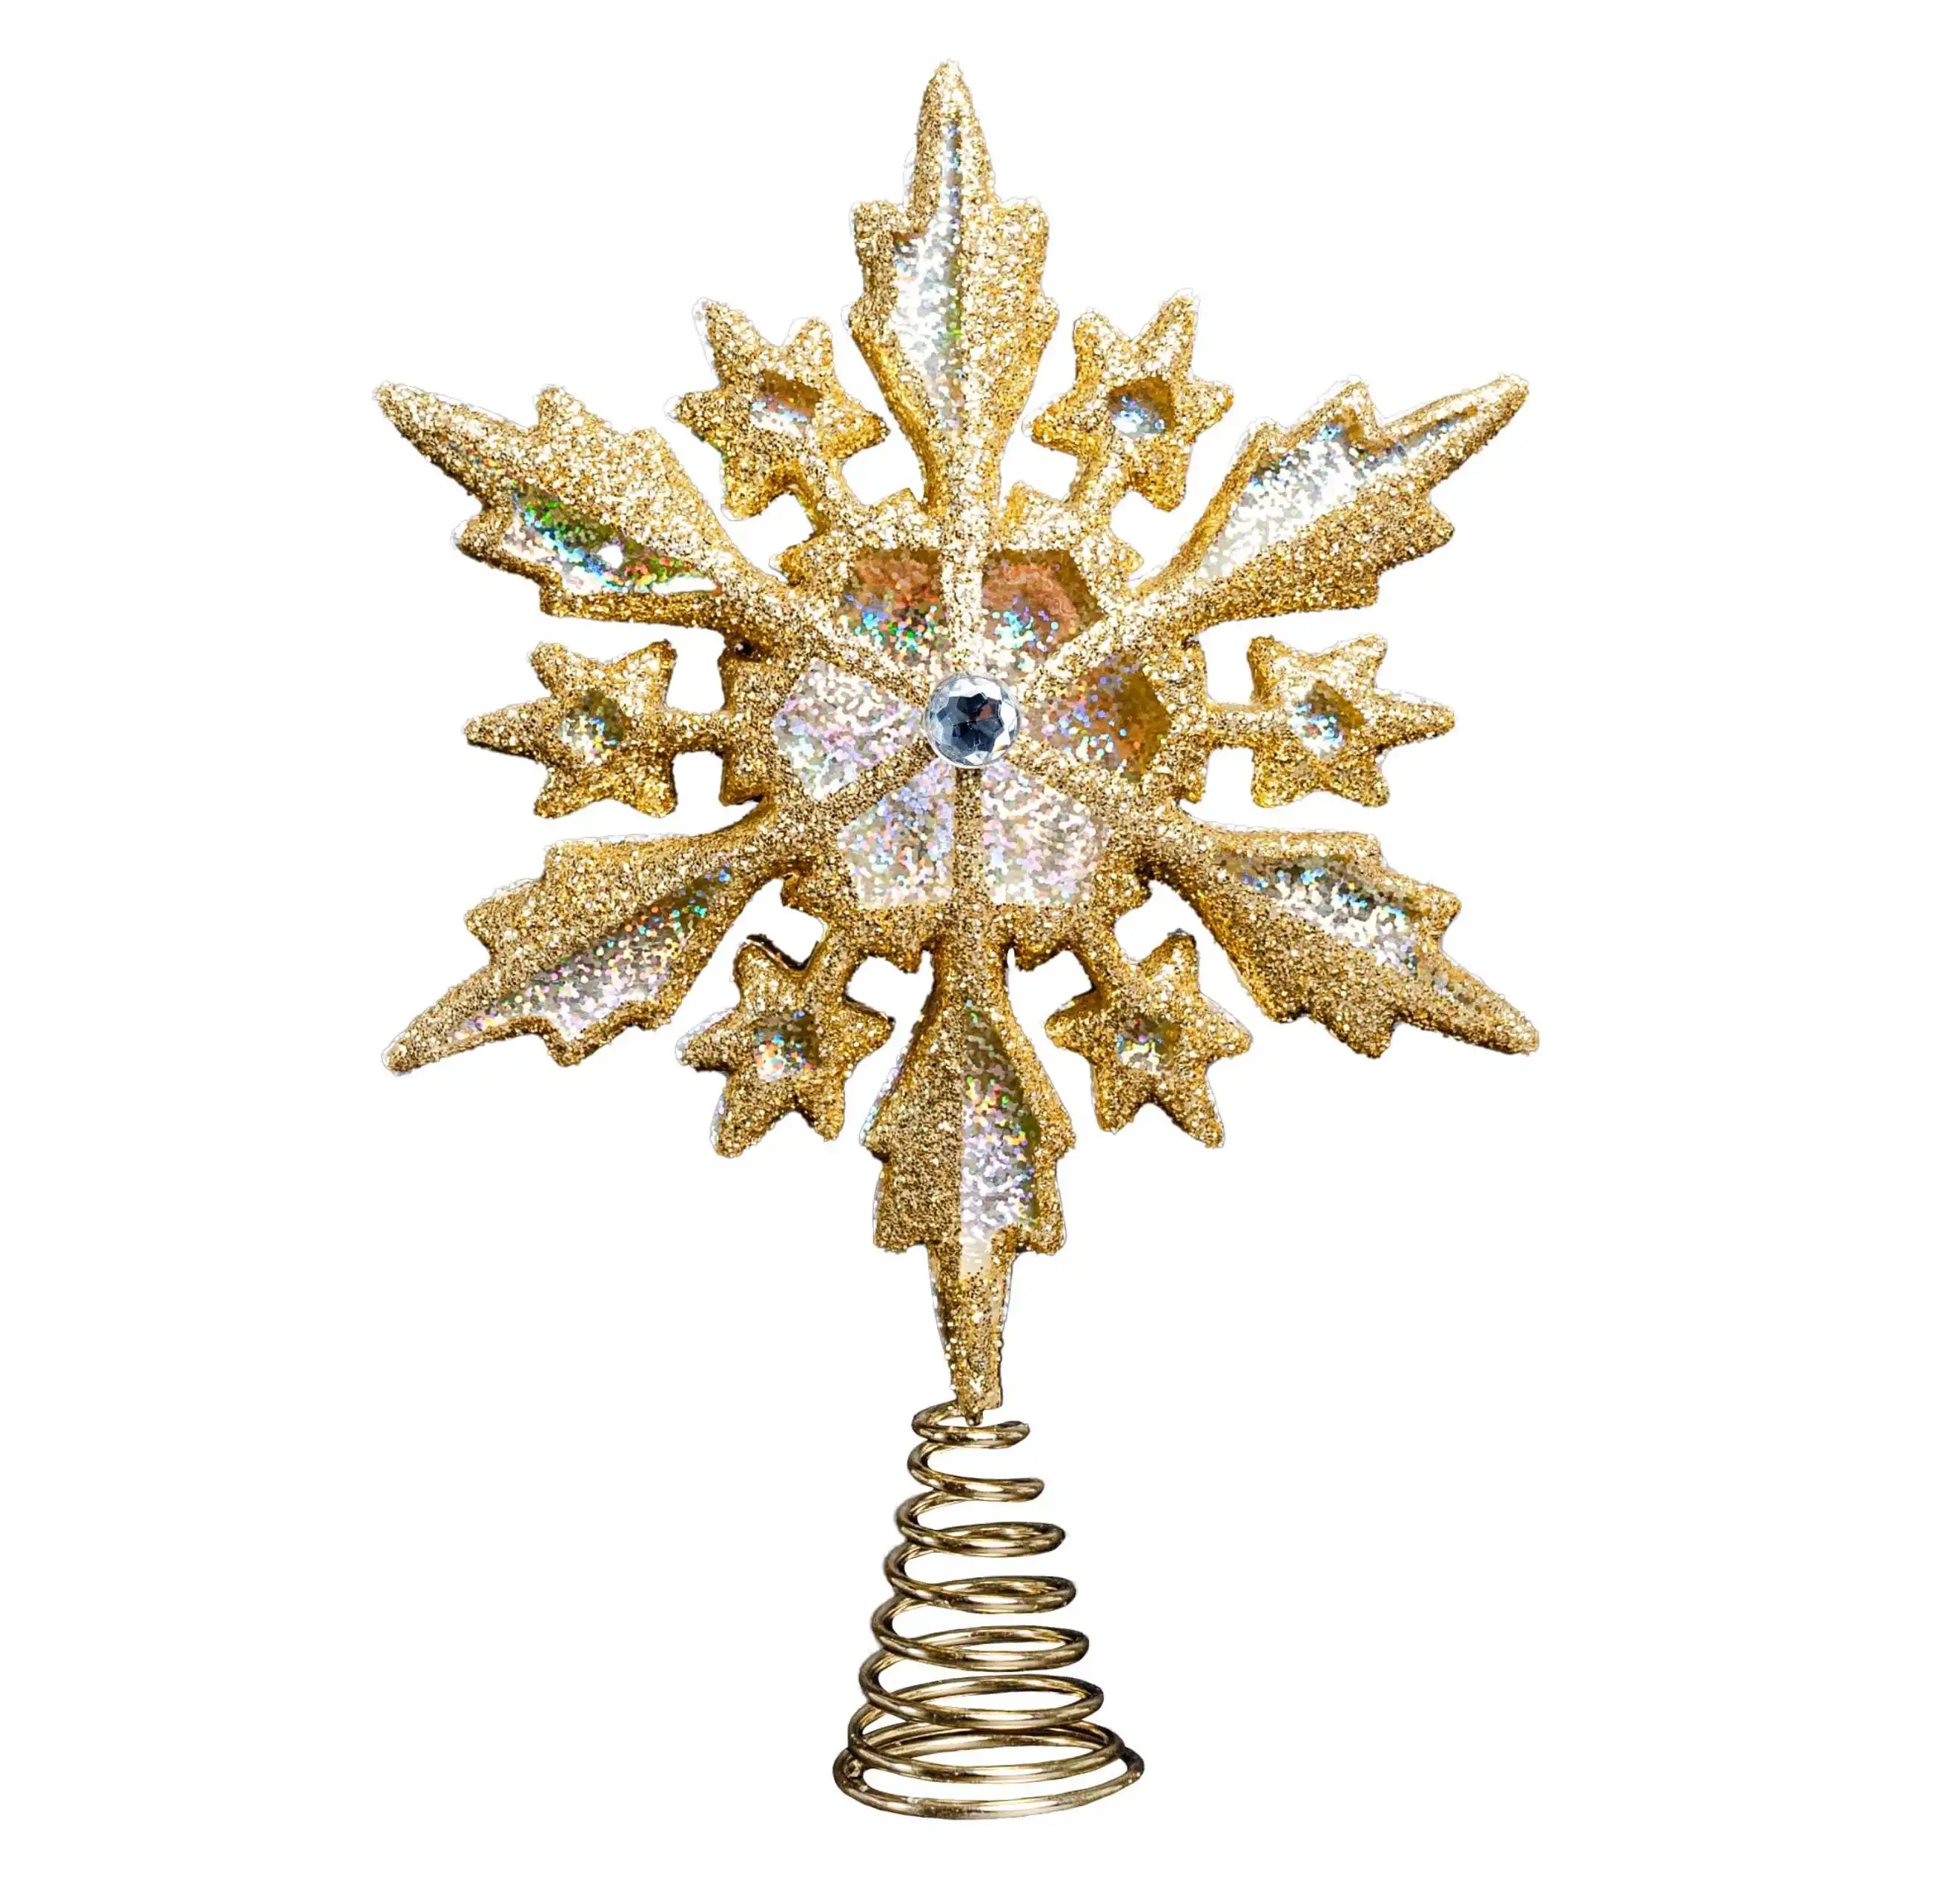 OEM ODM 8 pulgadas brillante filigrana copo de nieve árbol de Navidad Topper/decoración del hogar adornos (oro holográfico)